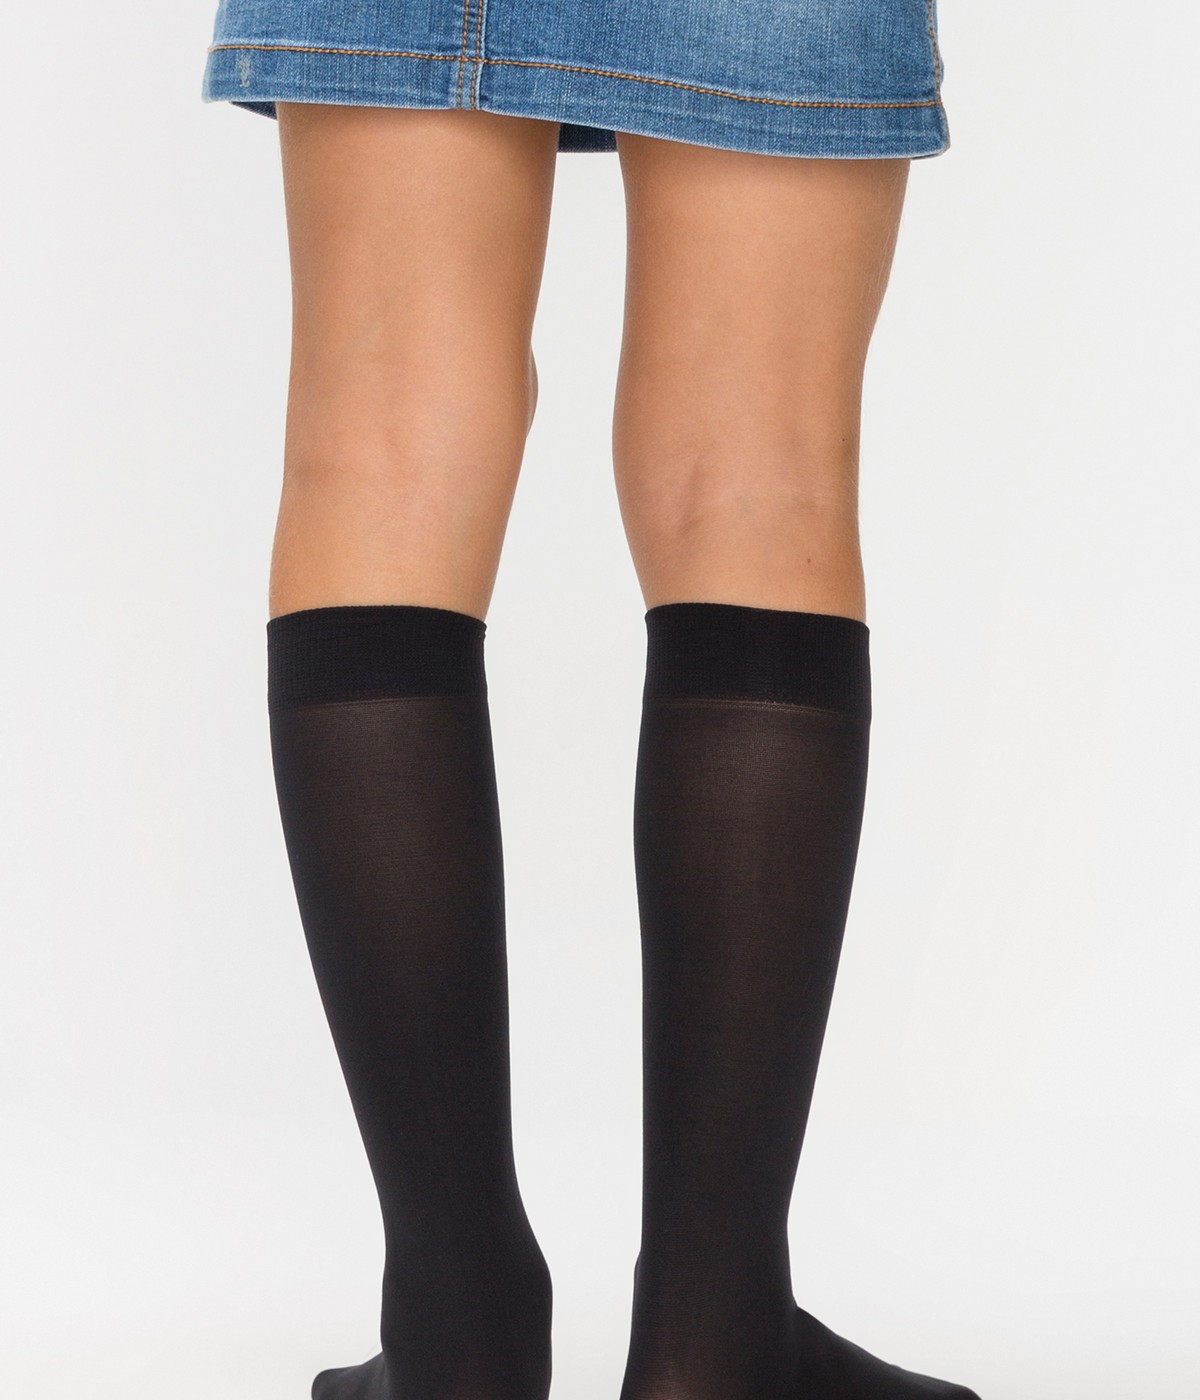 Ciorapi pentru pantalon fete Mikro 40